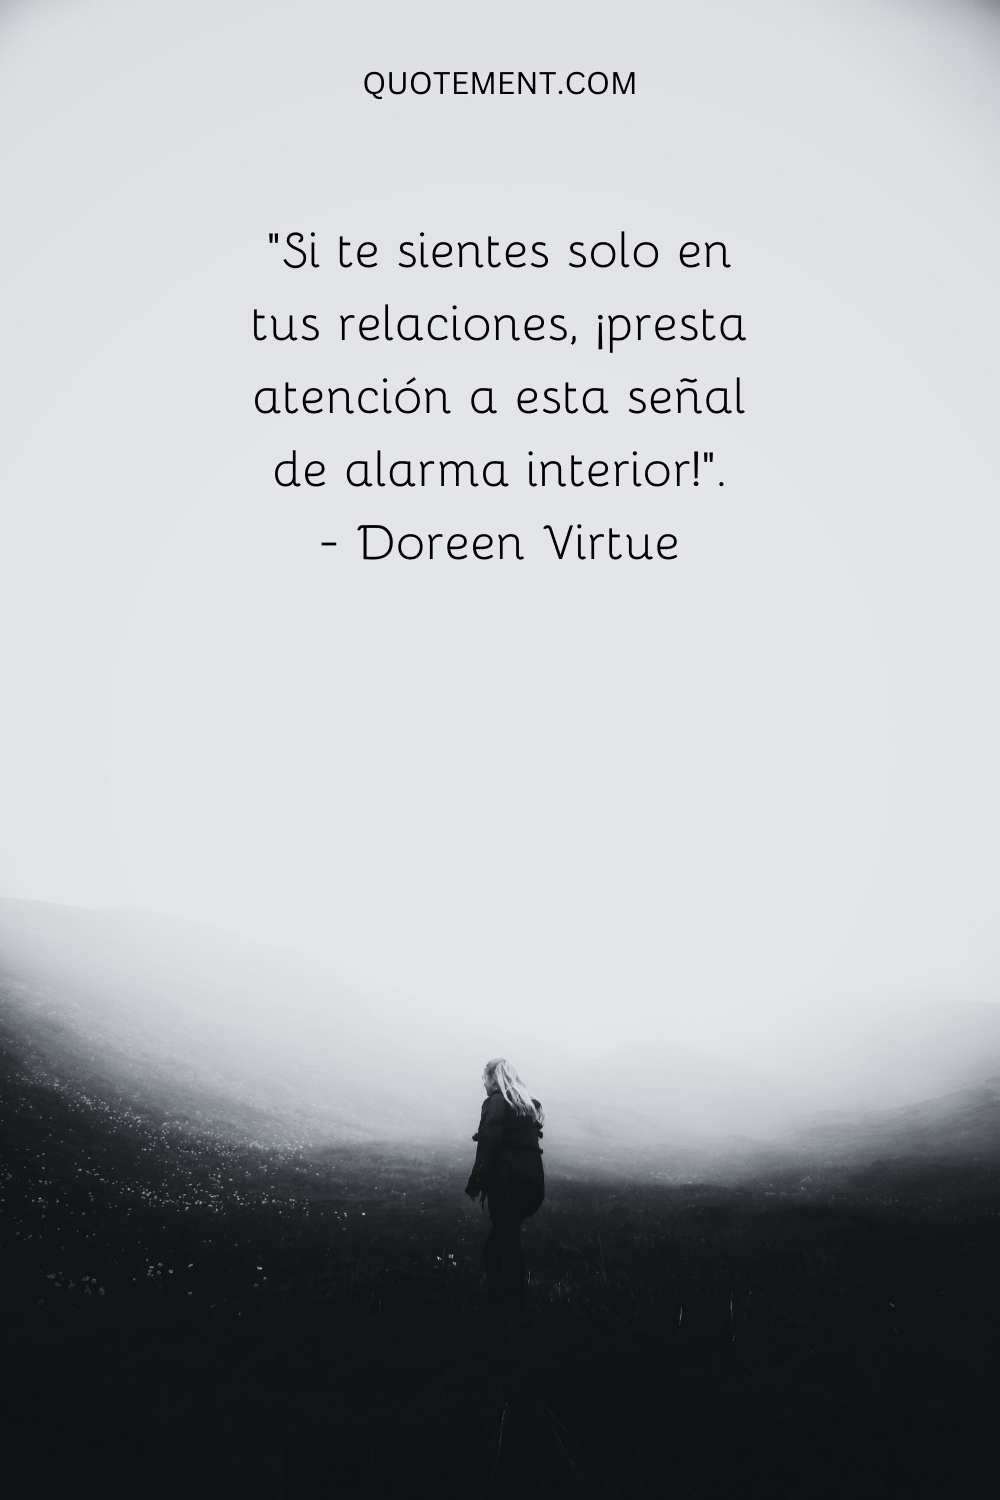 "Si te sientes solo en tus relaciones, ¡presta atención a esta señal de alarma interior!". - Doreen Virtue